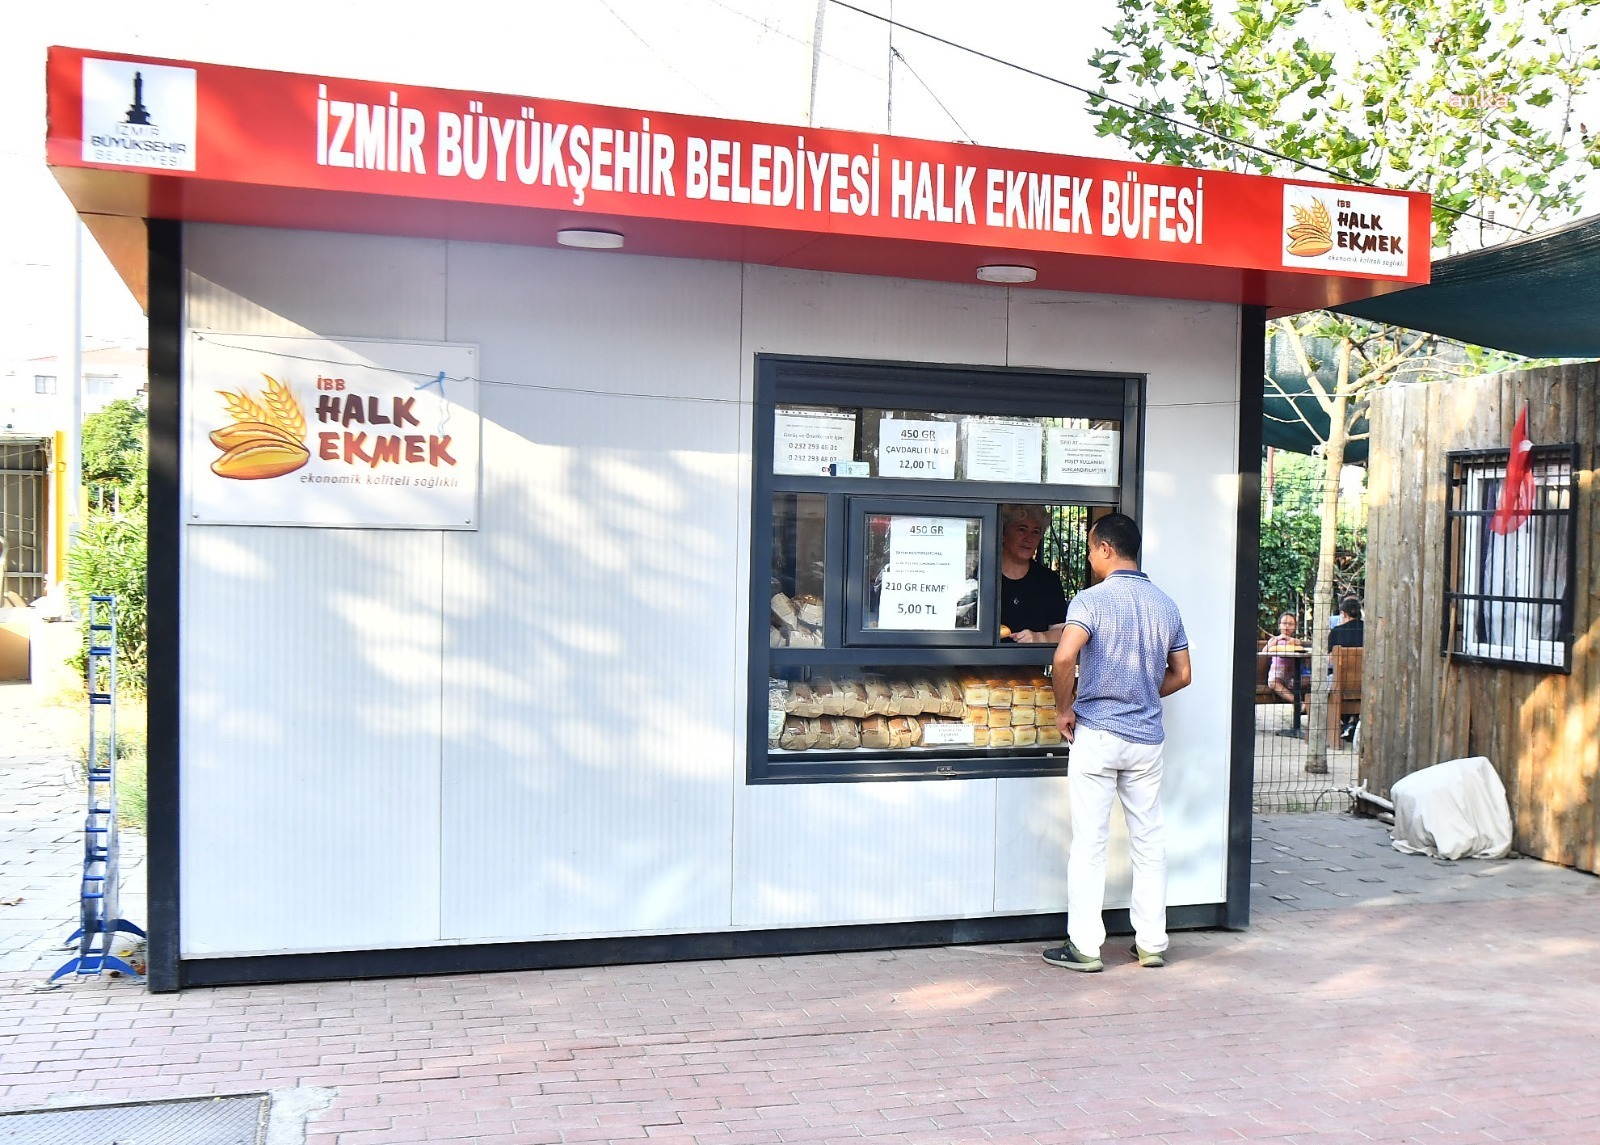 İzmir’de, Kent ekmek fiyatı 7 TL’den 5 TL’ye düştü